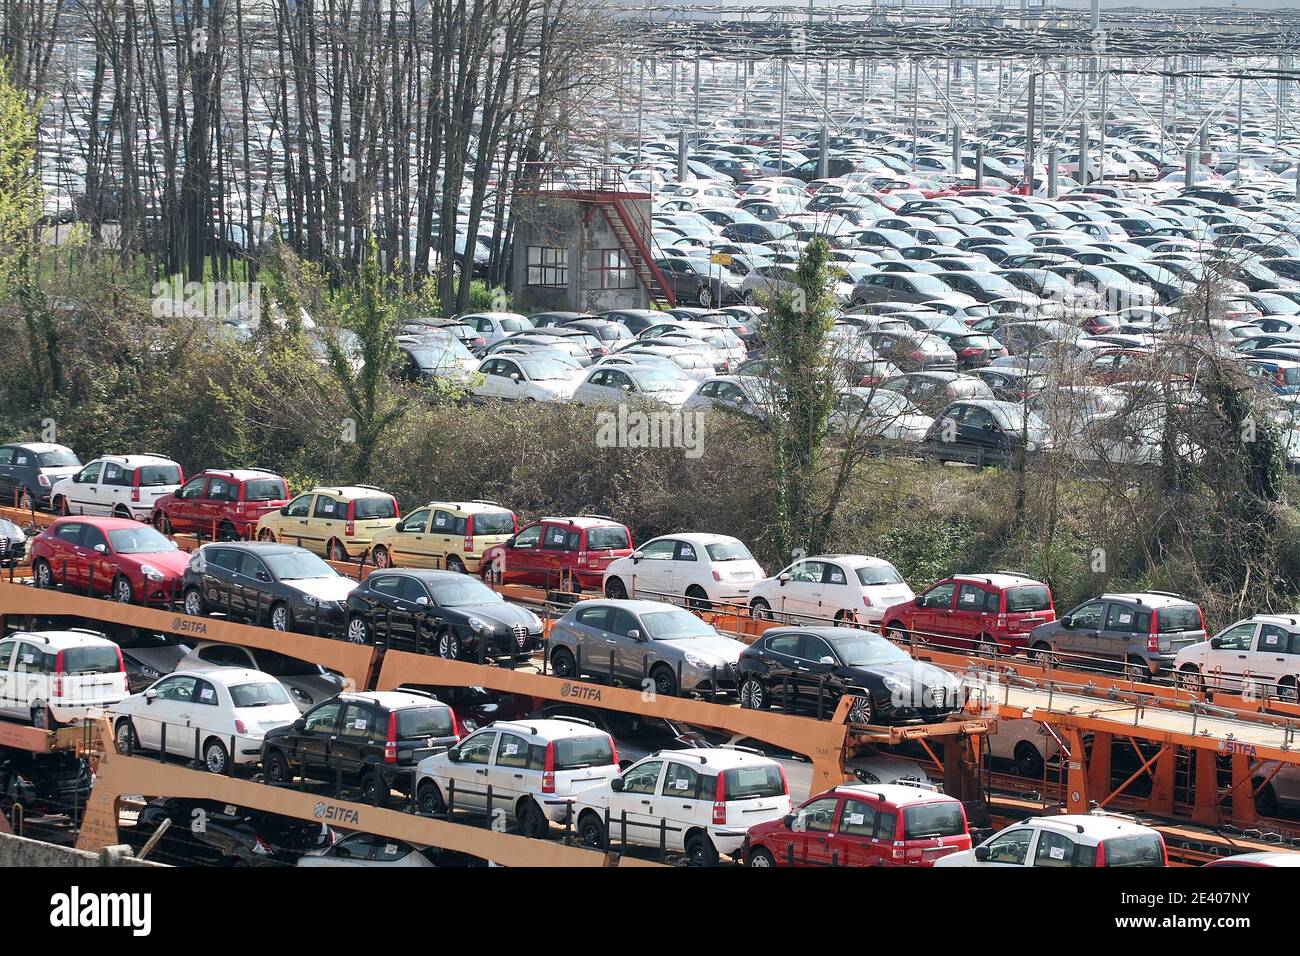 Cassino - Italia - 24 marzo 2013: Le Fiat Panda e le Alfa Romeo prodotte nello stabilimento di Cassino nel parcheggio auto pronte per essere distribuite Stock Photo